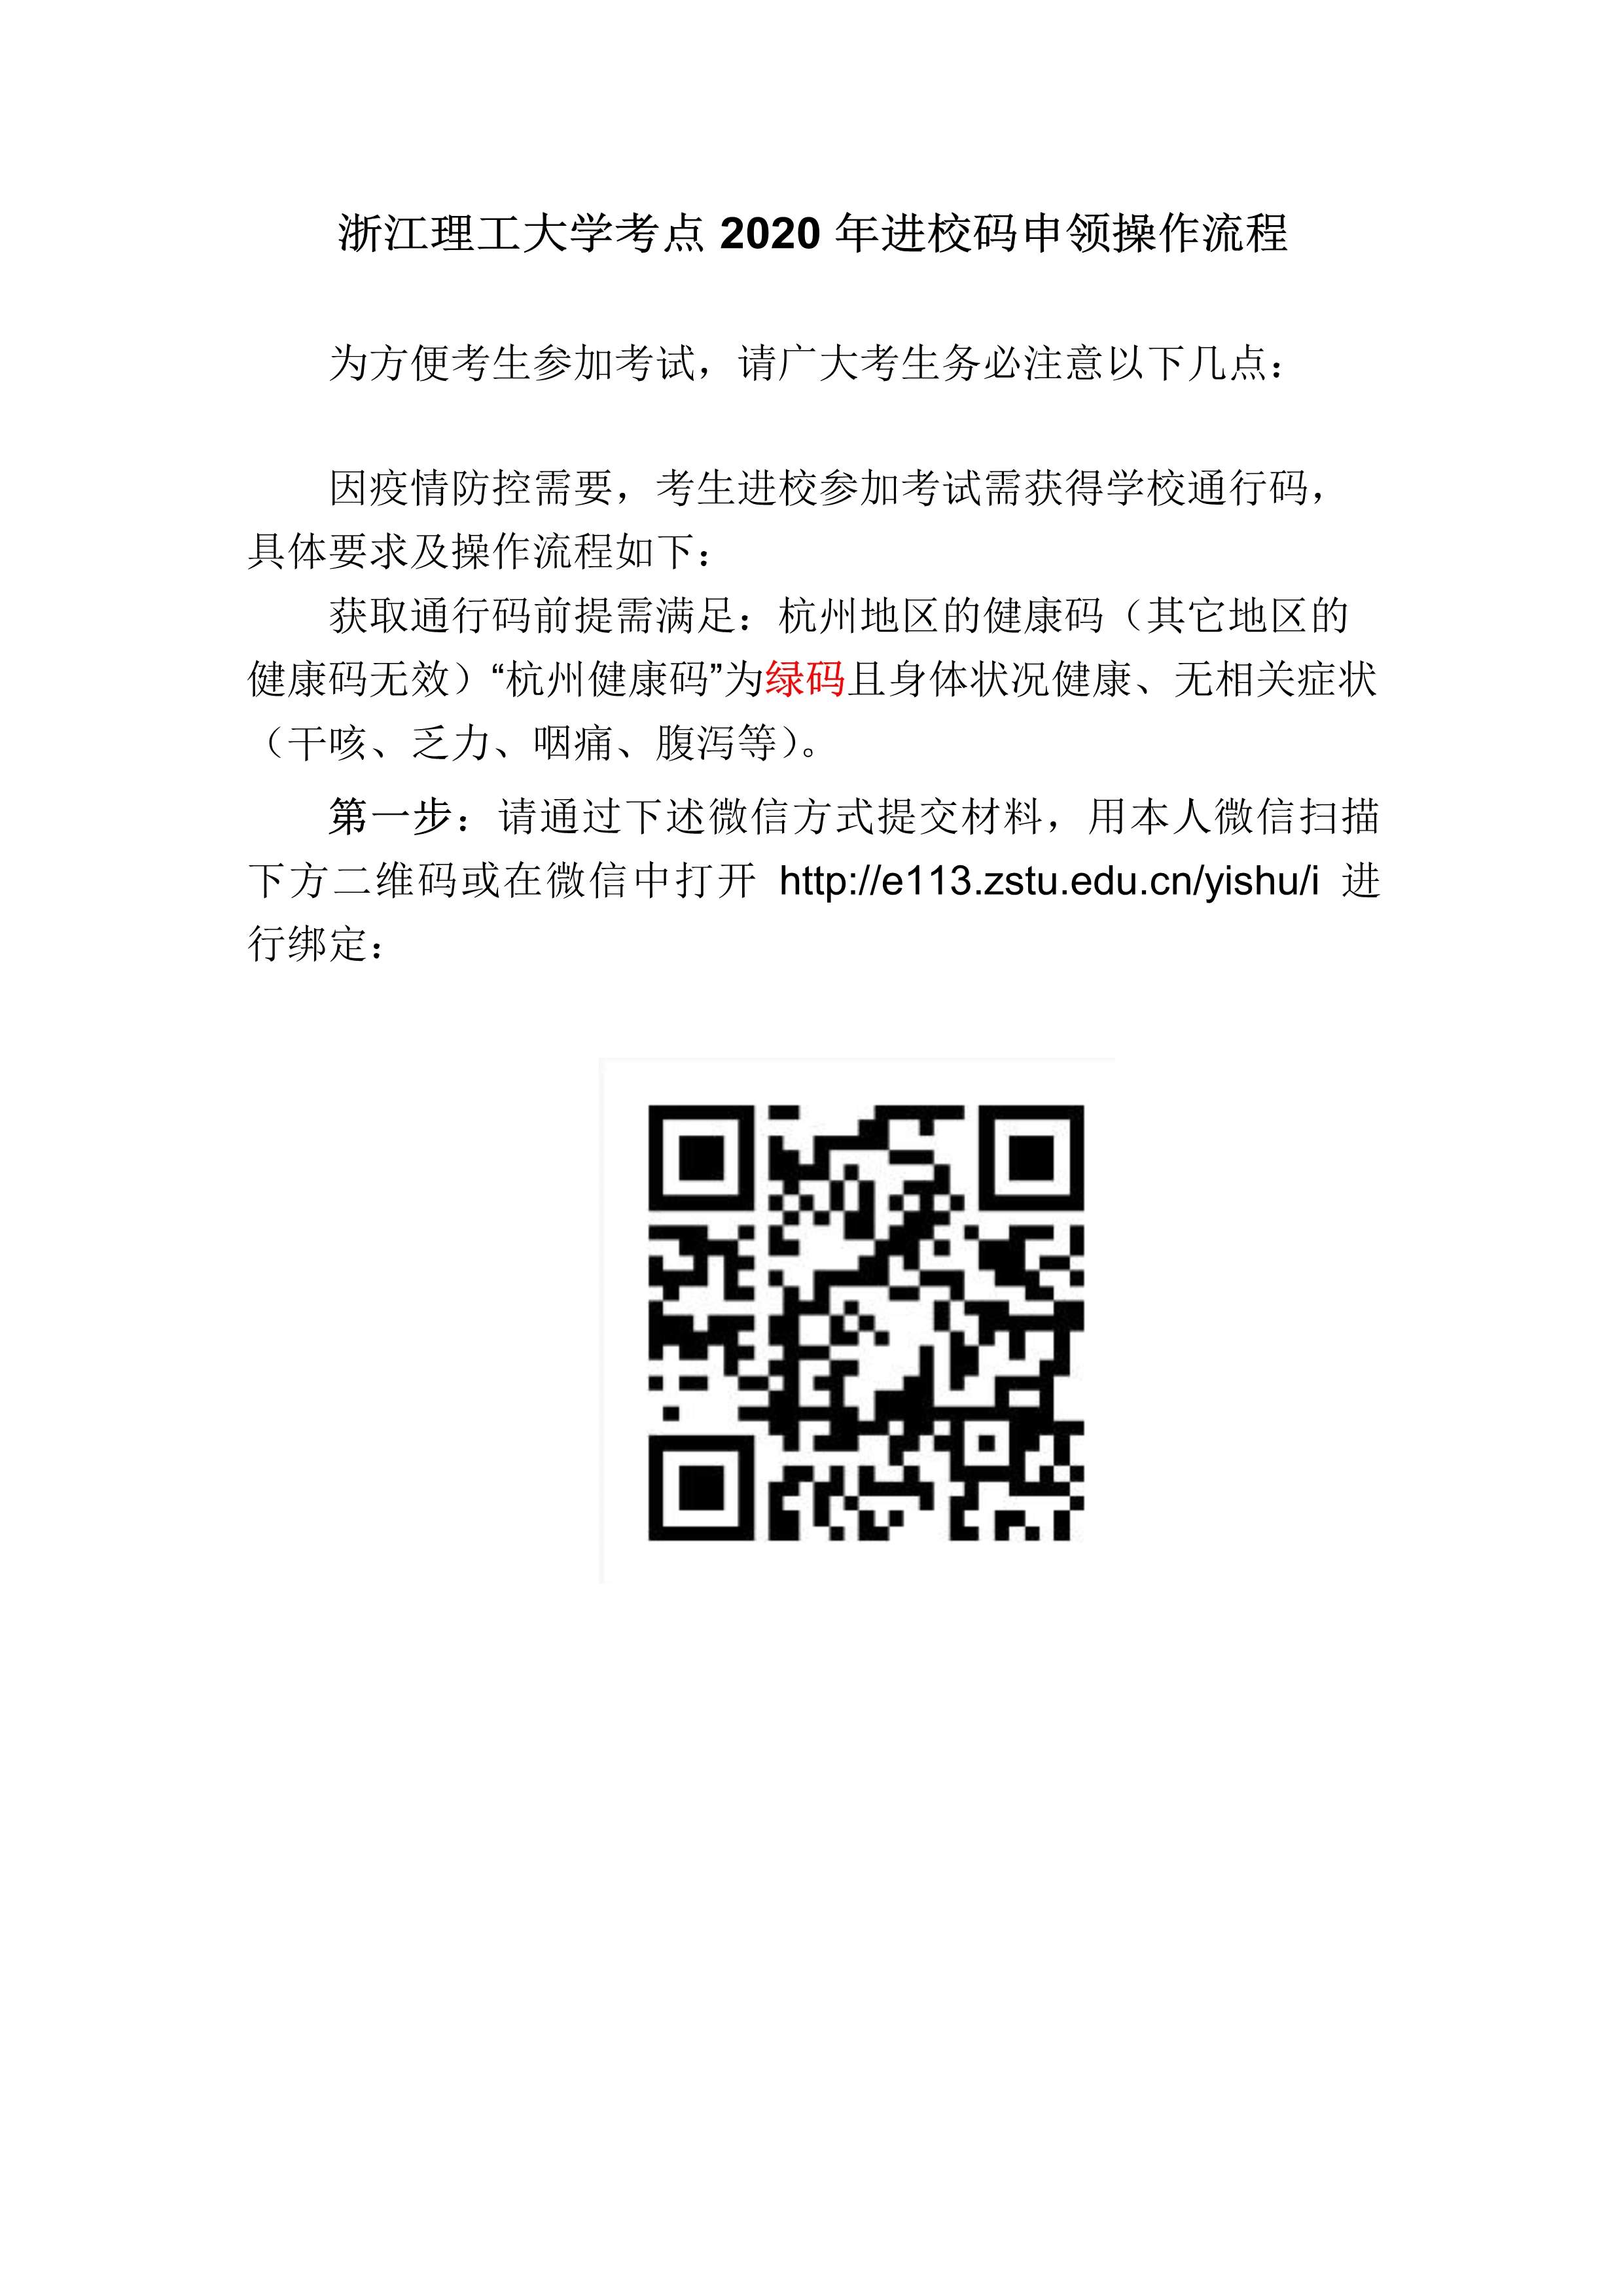 附件4：杭州考点考生防疫须知_3.jpg